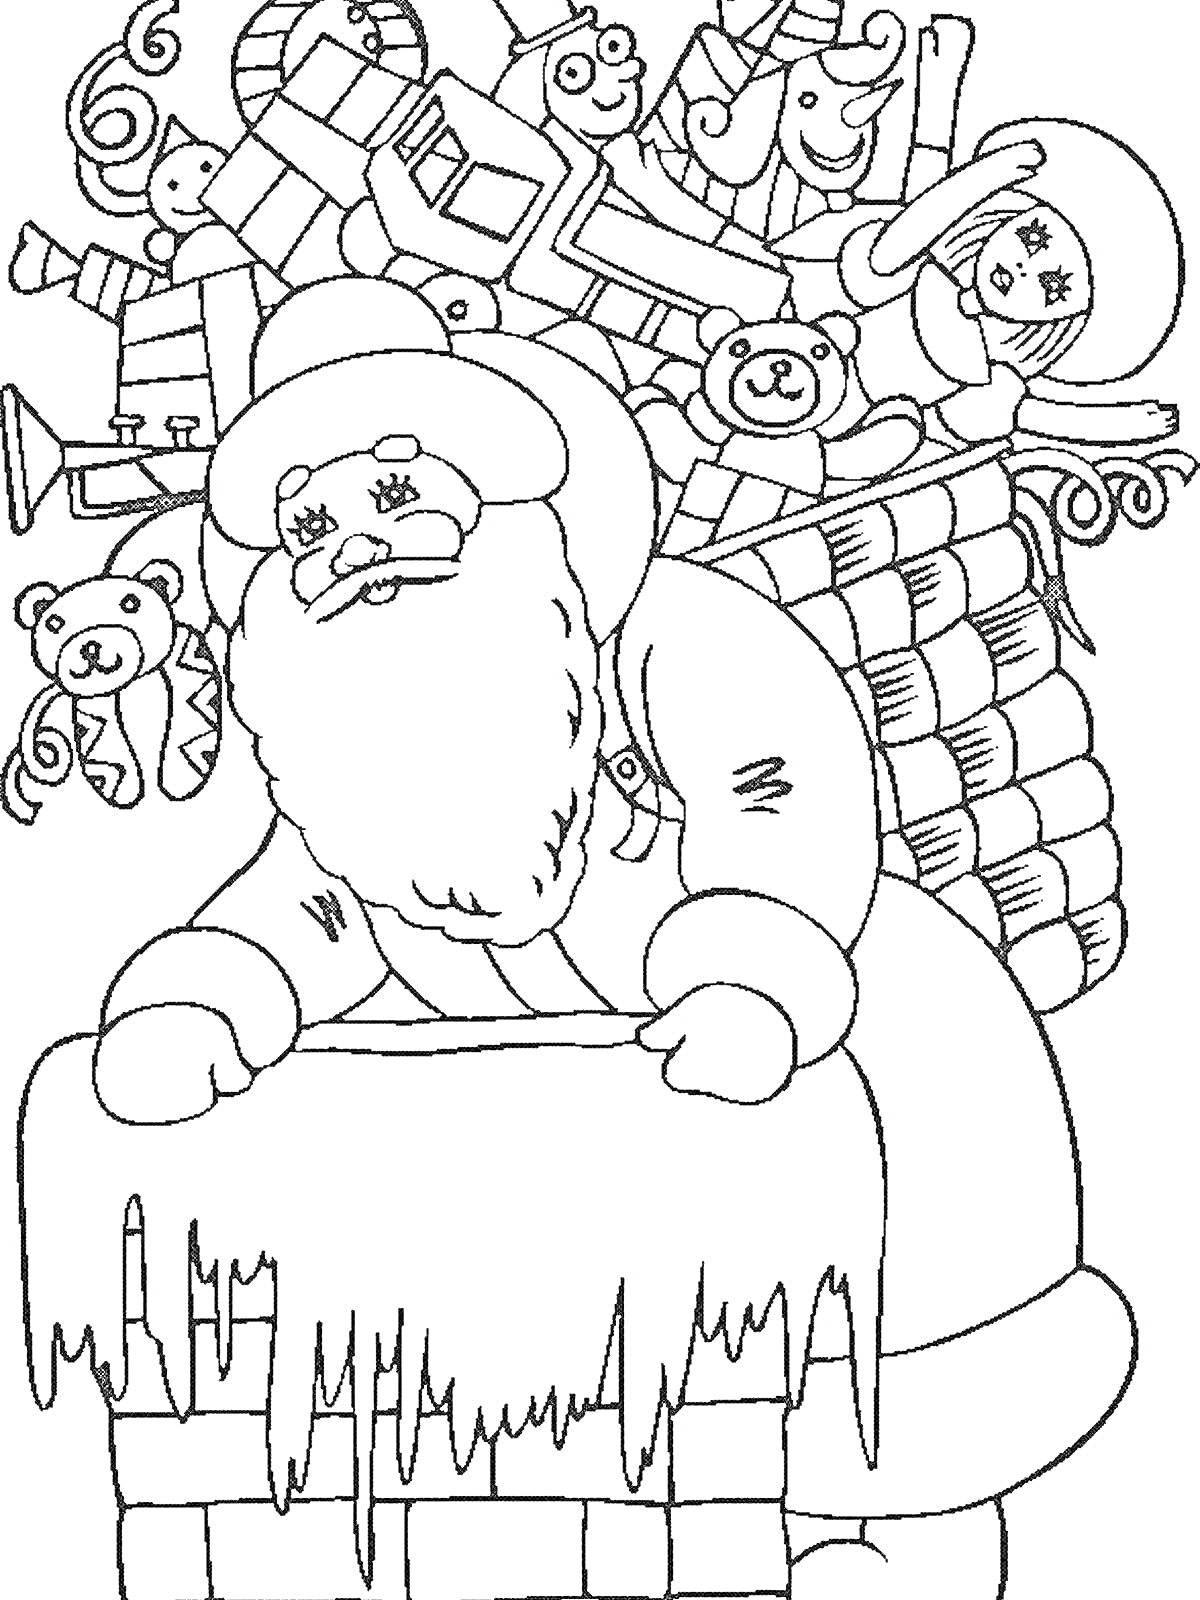 РаскраскаДед Мороз с мешком игрушек (робот, плюшевый медведь, кукла, самолет)